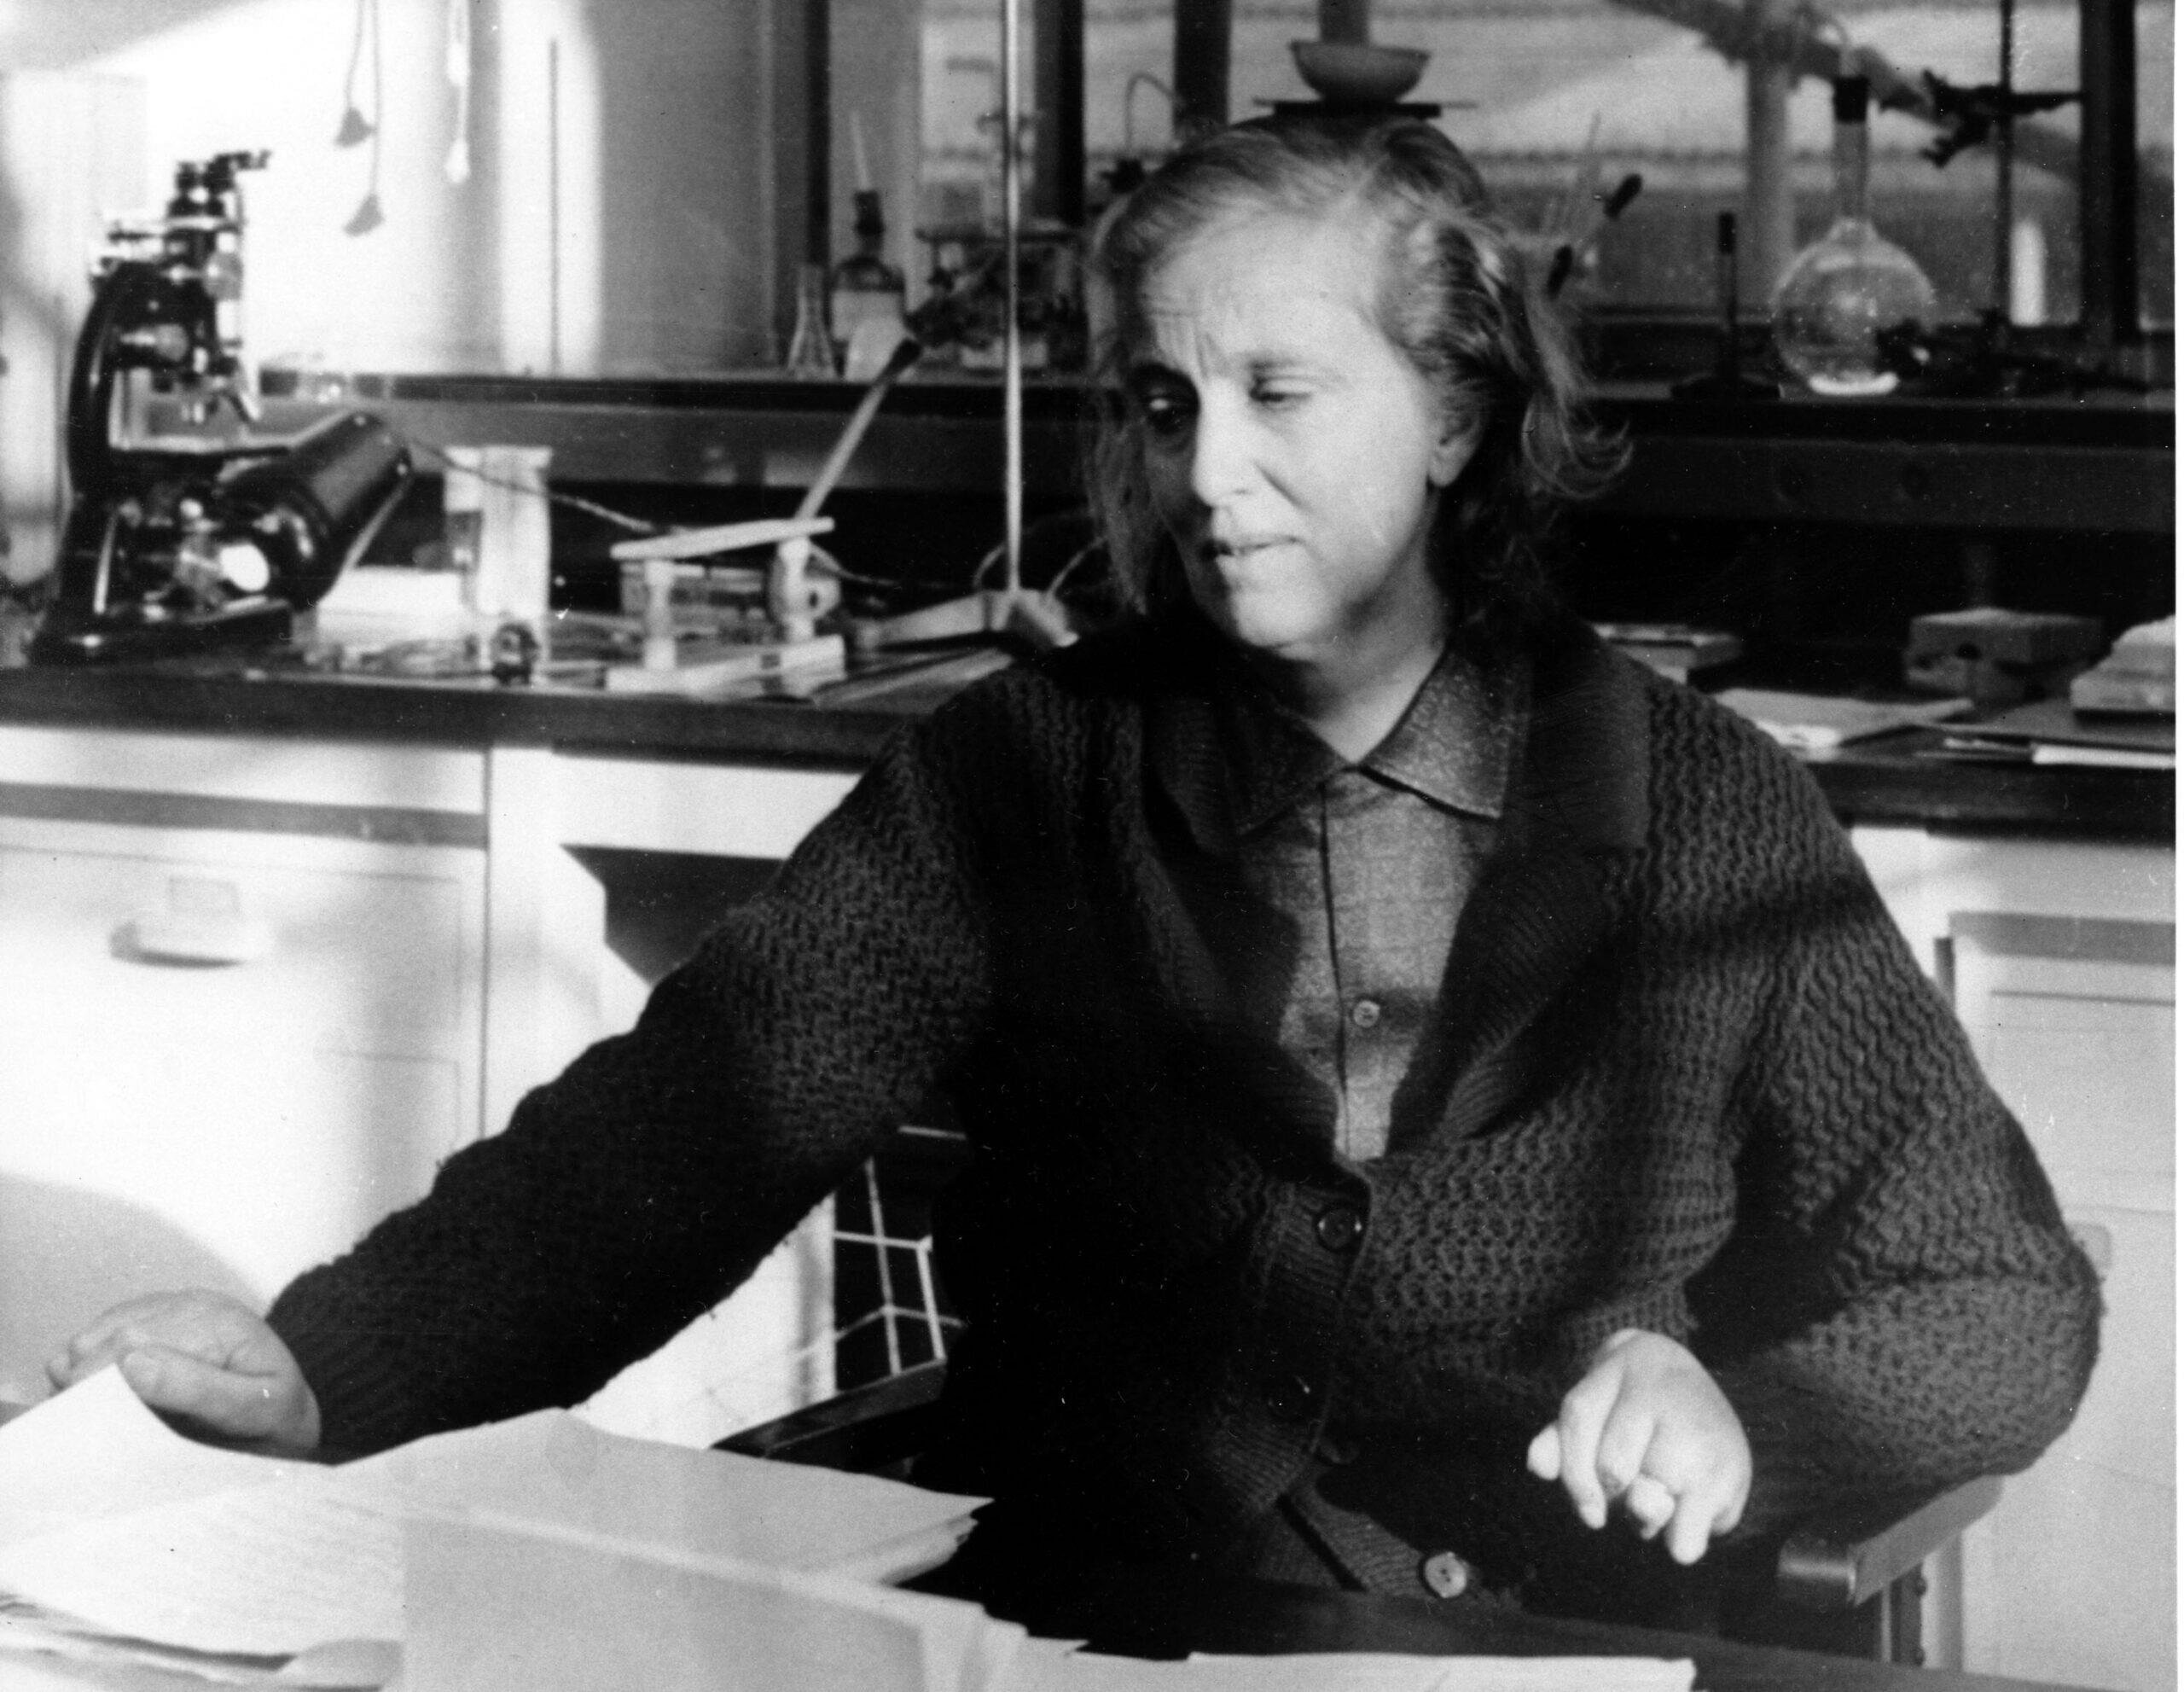 Năm 1947, Dorothy Hodgkin được bầu làm Thành viên của Hiệp hội Hoàng gia Anh. Bà nhận được Huân chương Hoàng gia năm 1956 và Huân chương Công trạng năm 1965. Năm 1964, bà trở thành người phụ nữ Anh duy nhất nhận Giải thưởng Nobel Hóa học, vì công trình thành tựu xác định được cấu trúc của các chất sinh hóa quan trọng như penicillin, B12 và insulin bằng kỹ thuật tinh thể tia X. (Ảnh: AP Photo)